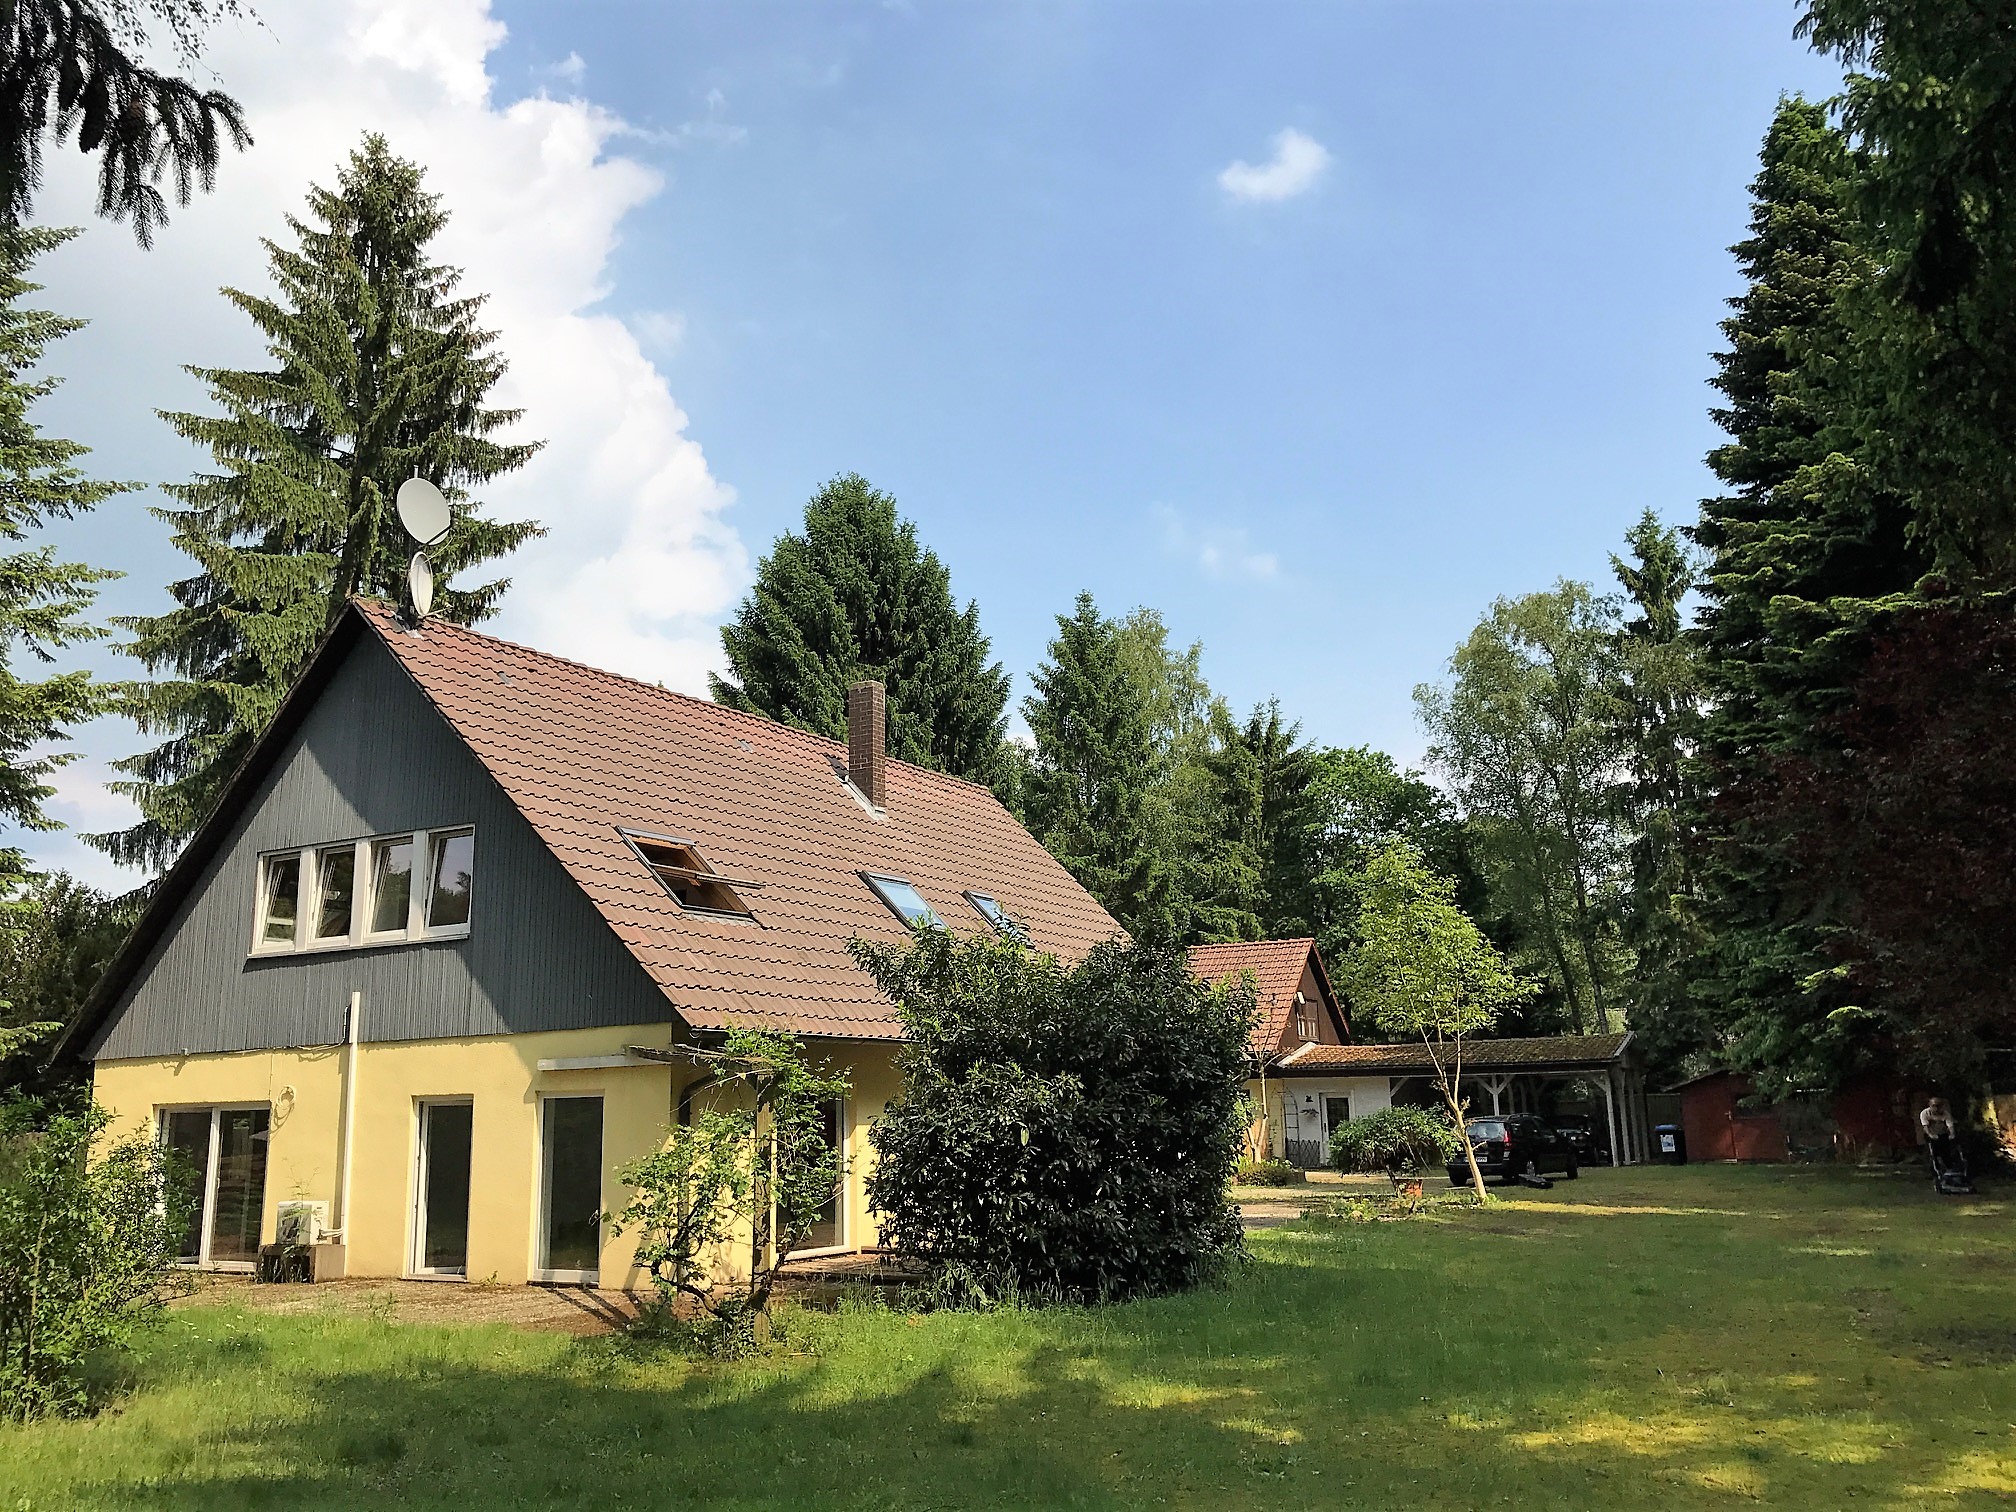 VERKAUFT: Einfamilienhaus mit 2.000 m² Grundstück und Nebengebäude - Bissendorf-Wietze / Wedemark